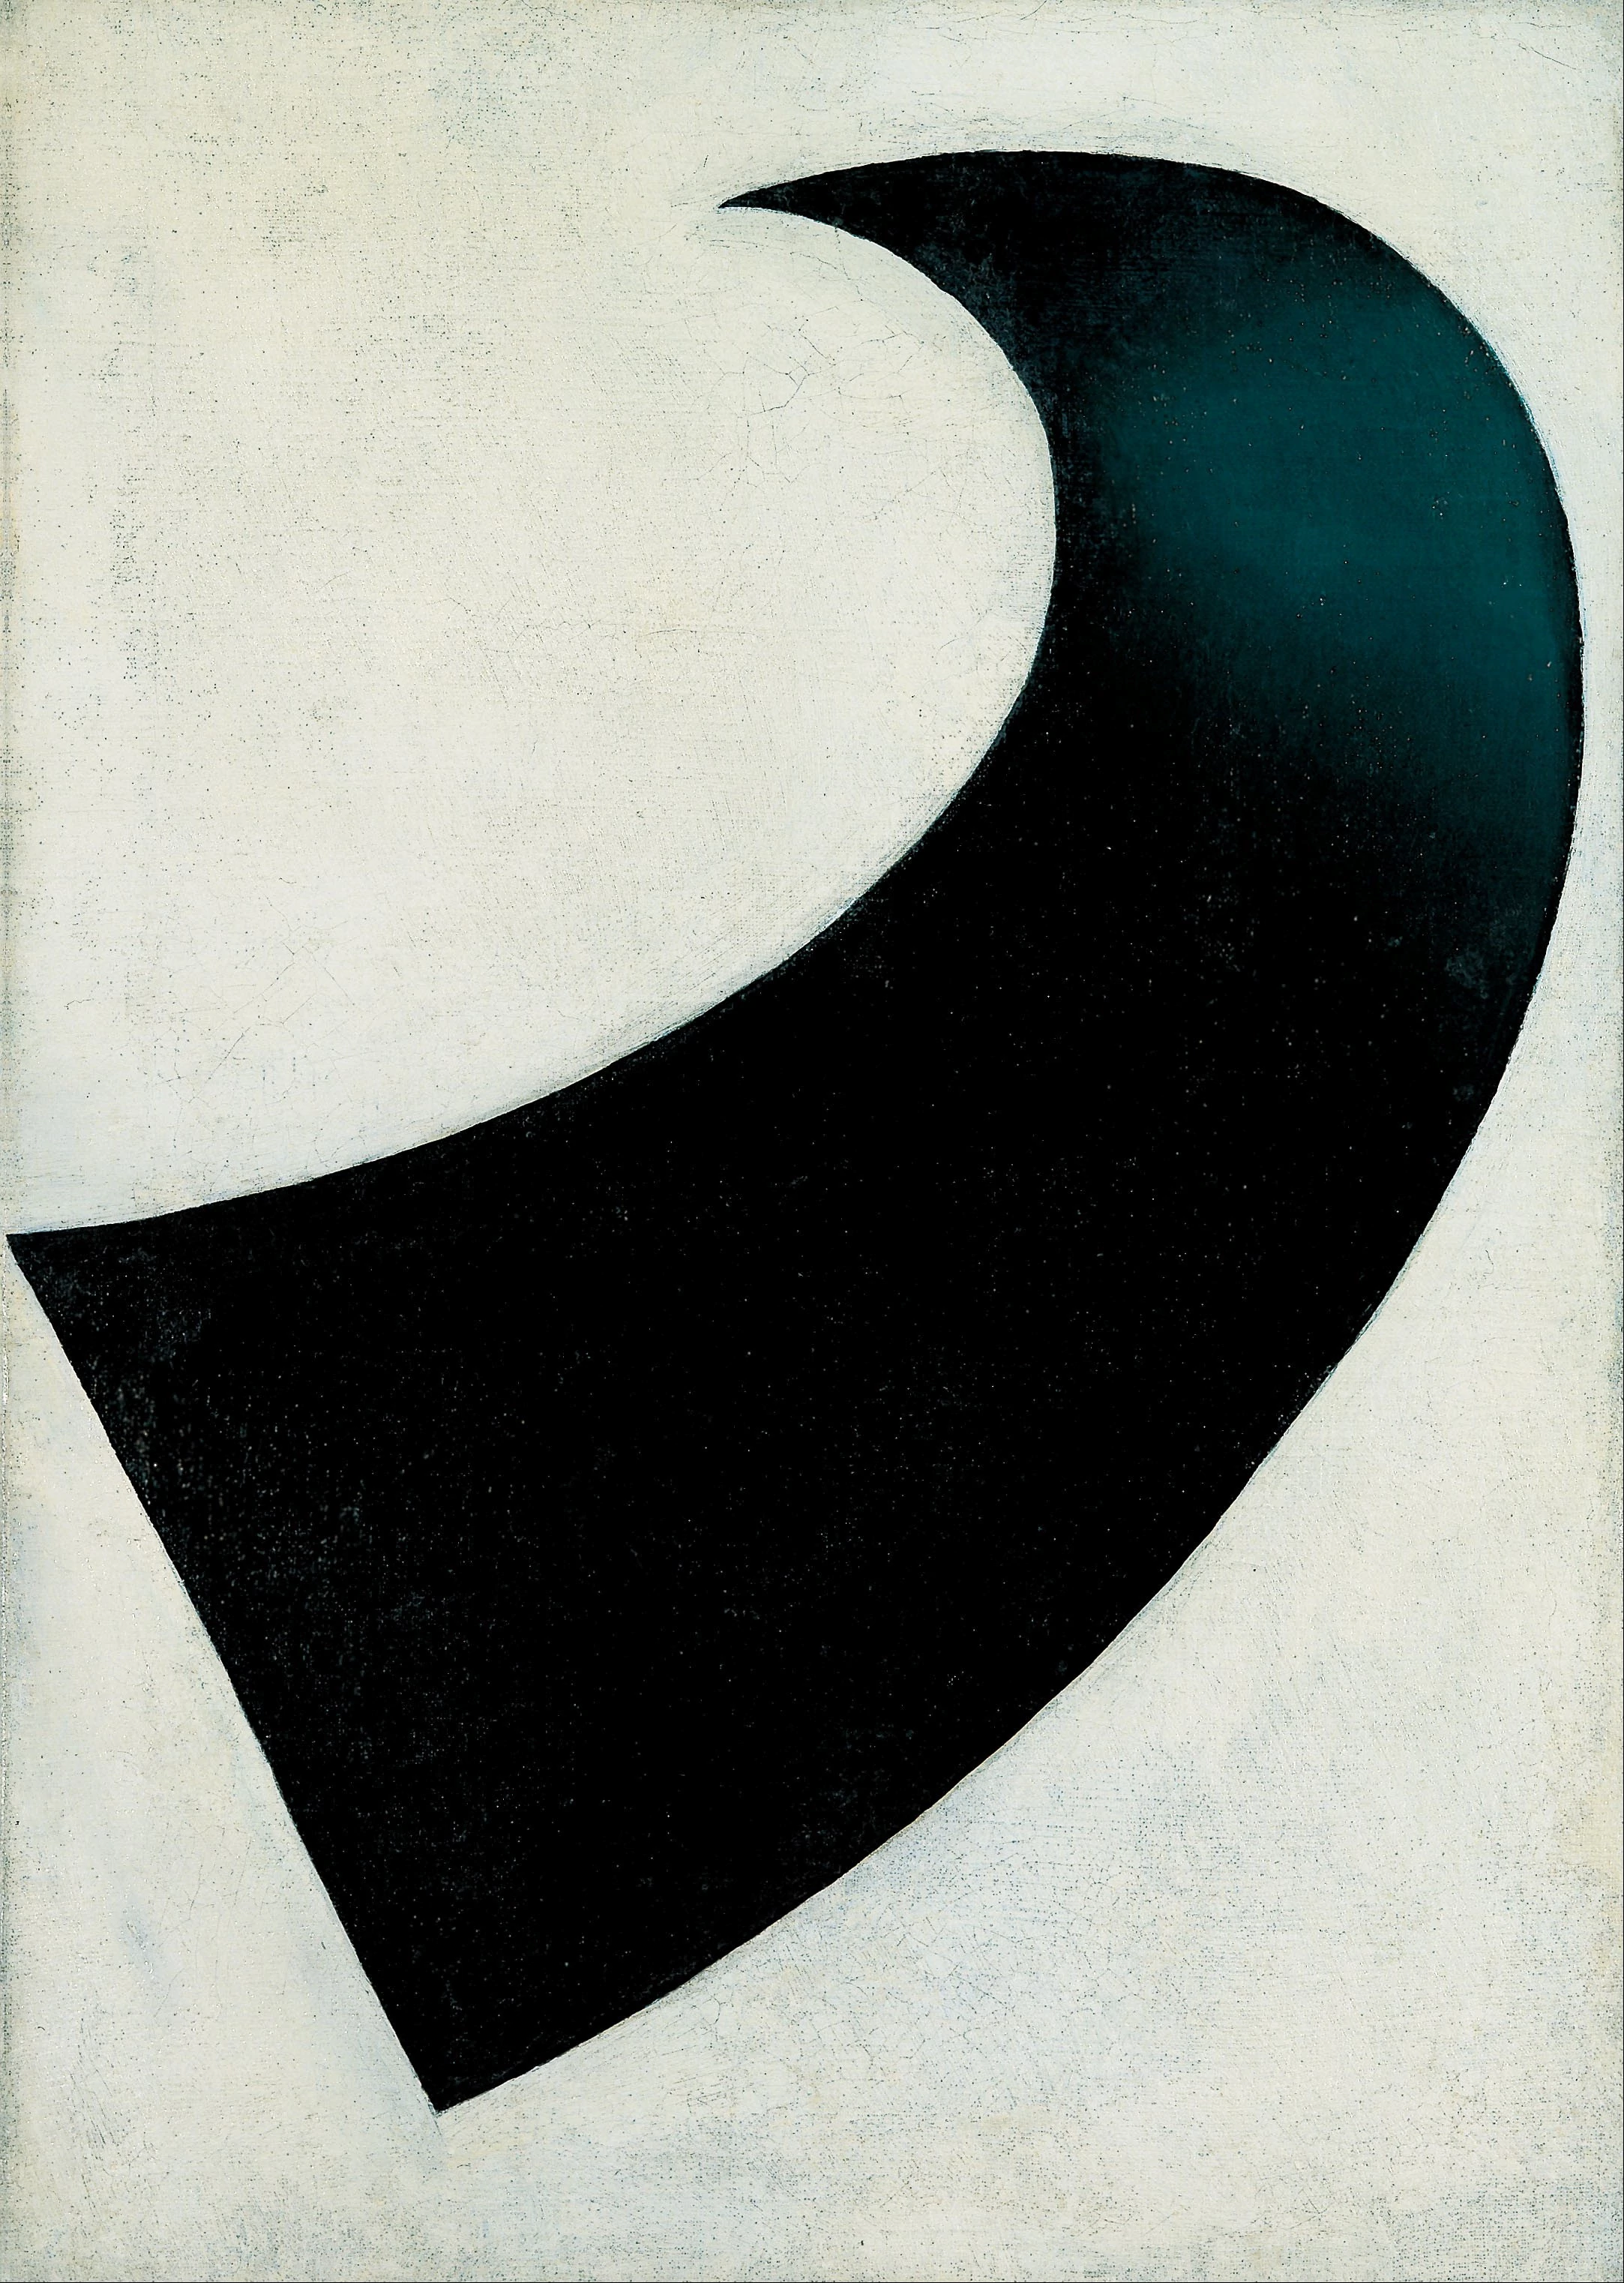 Suprematism, Kazimir Malevich